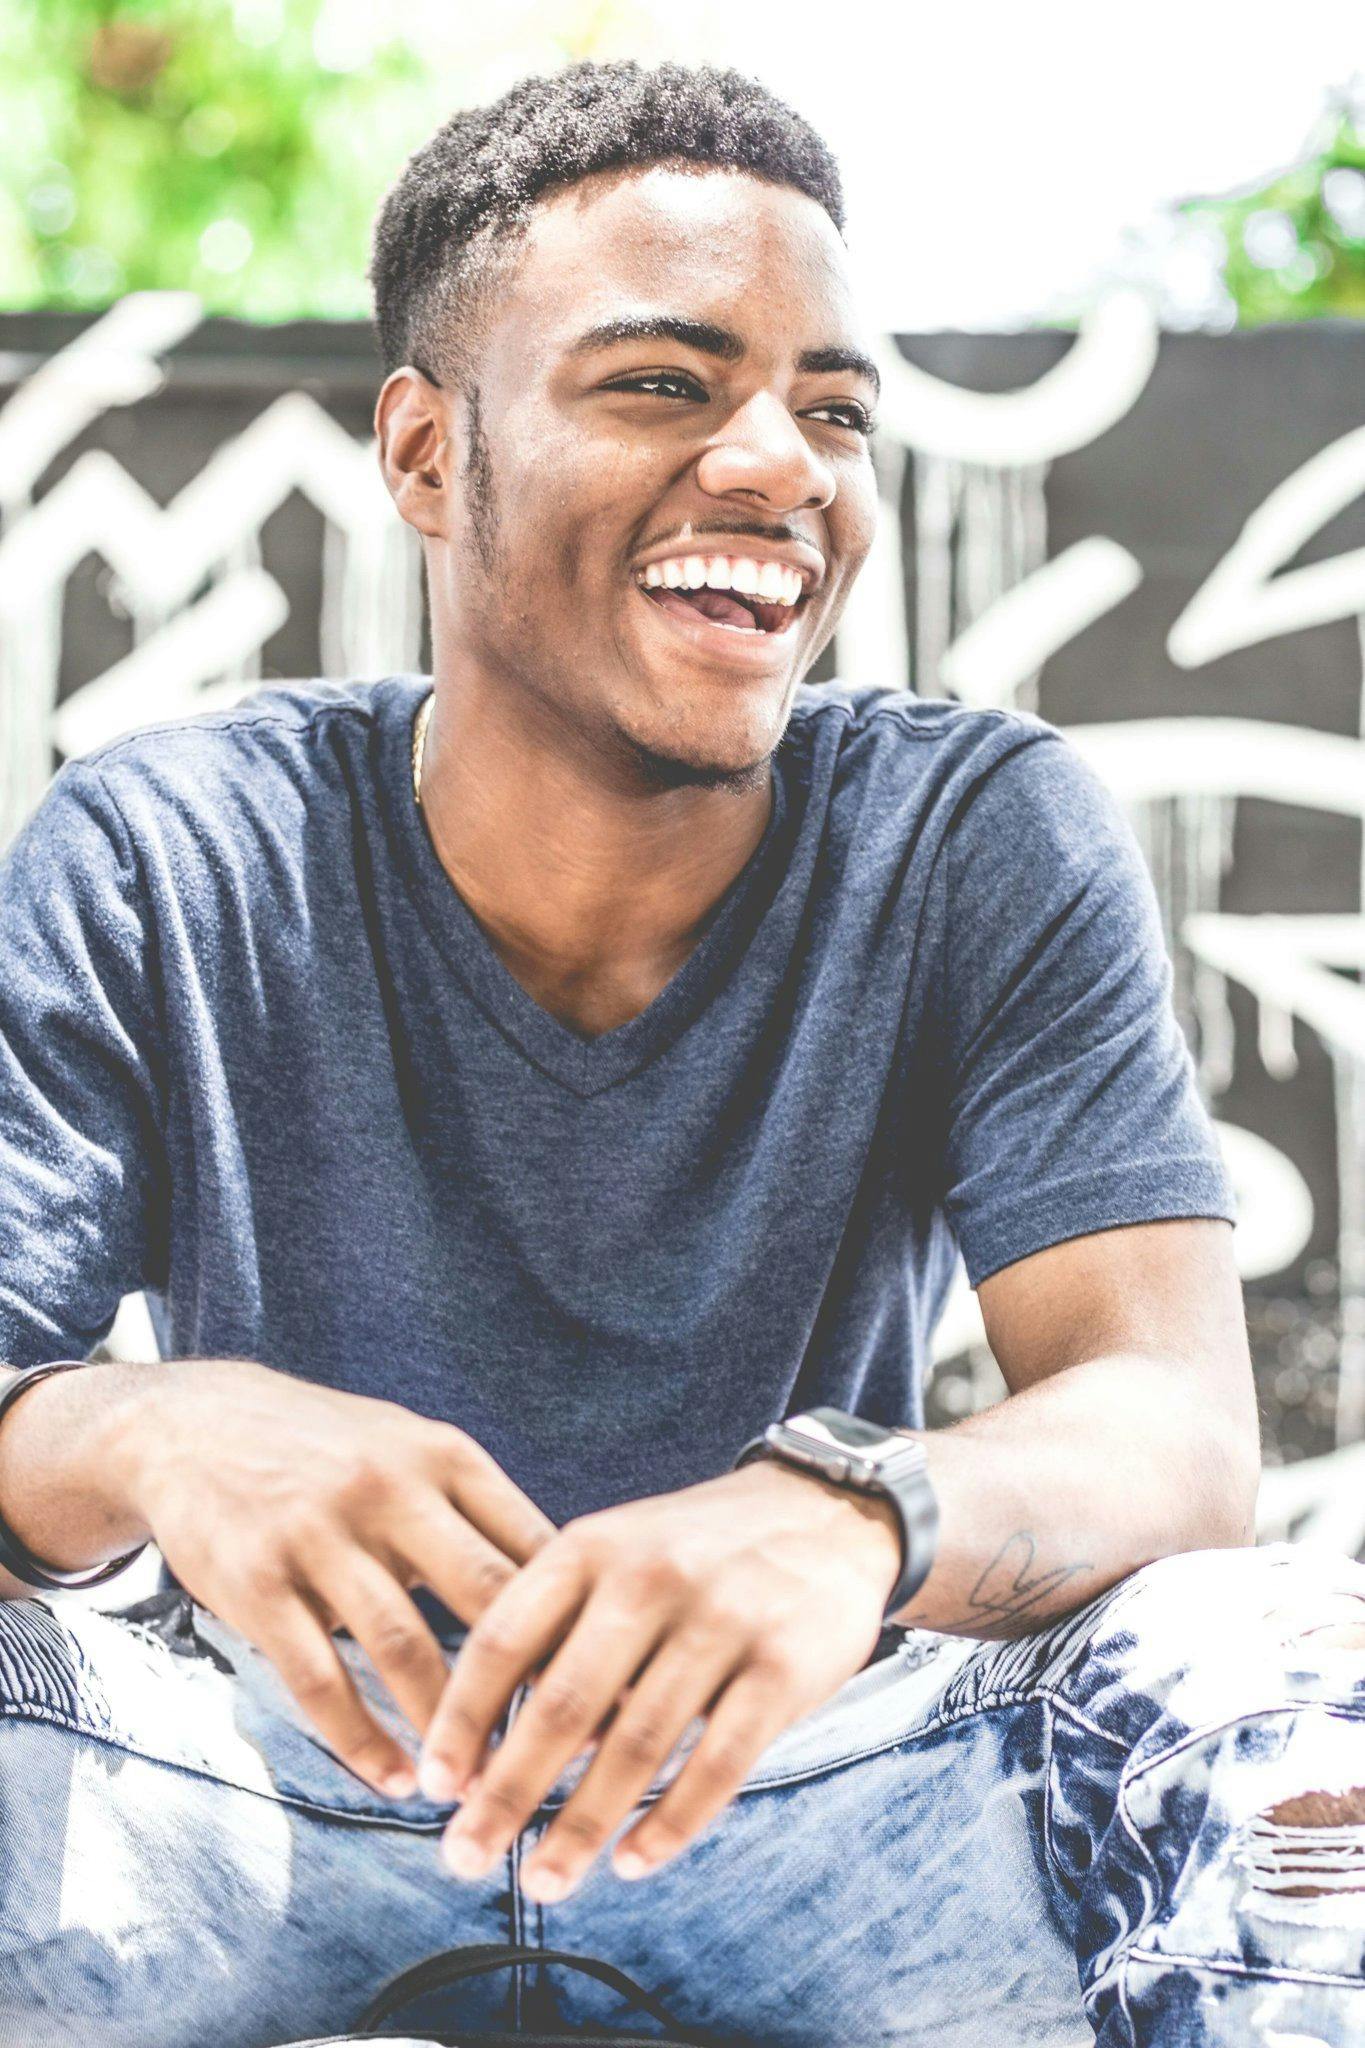 Lachender Mann in grauem T-Shirt mit V-Ausschnitt. | Quelle: Pexels